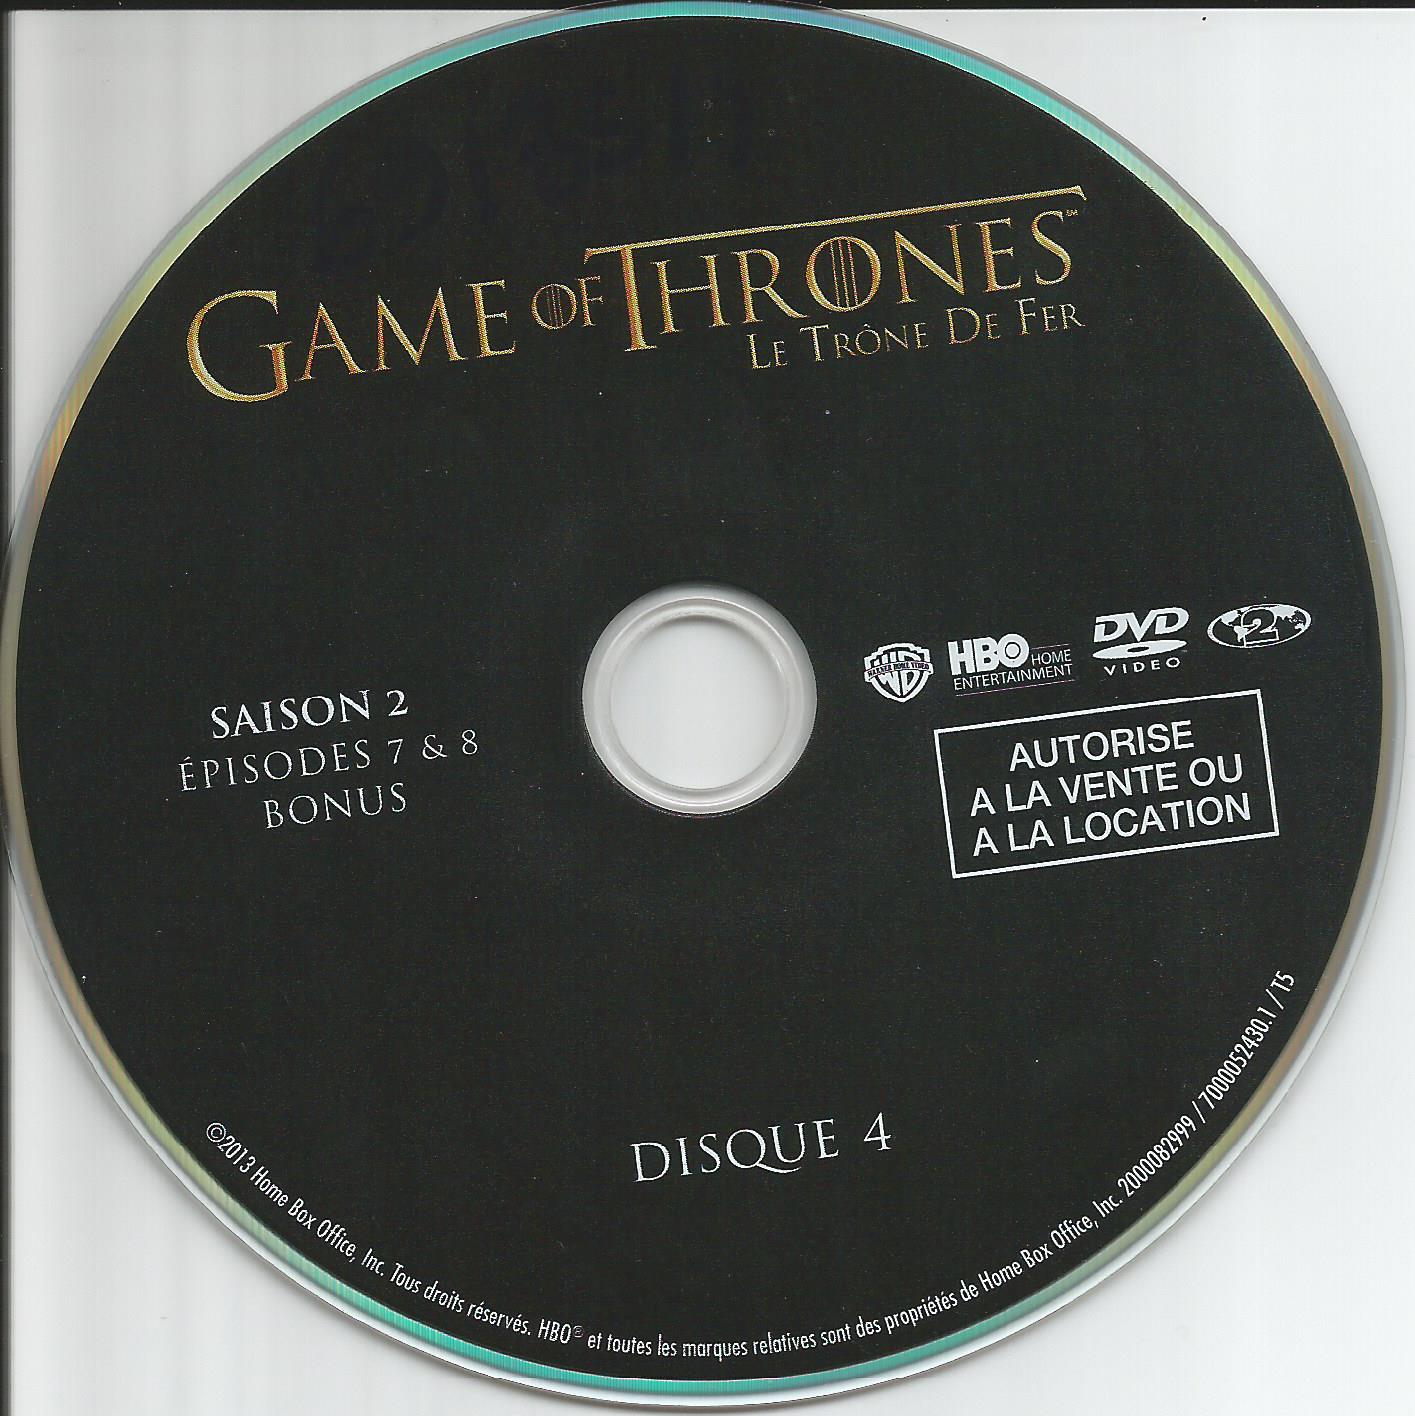 Game of thrones (le trone de fer) Saison 2 DVD 4